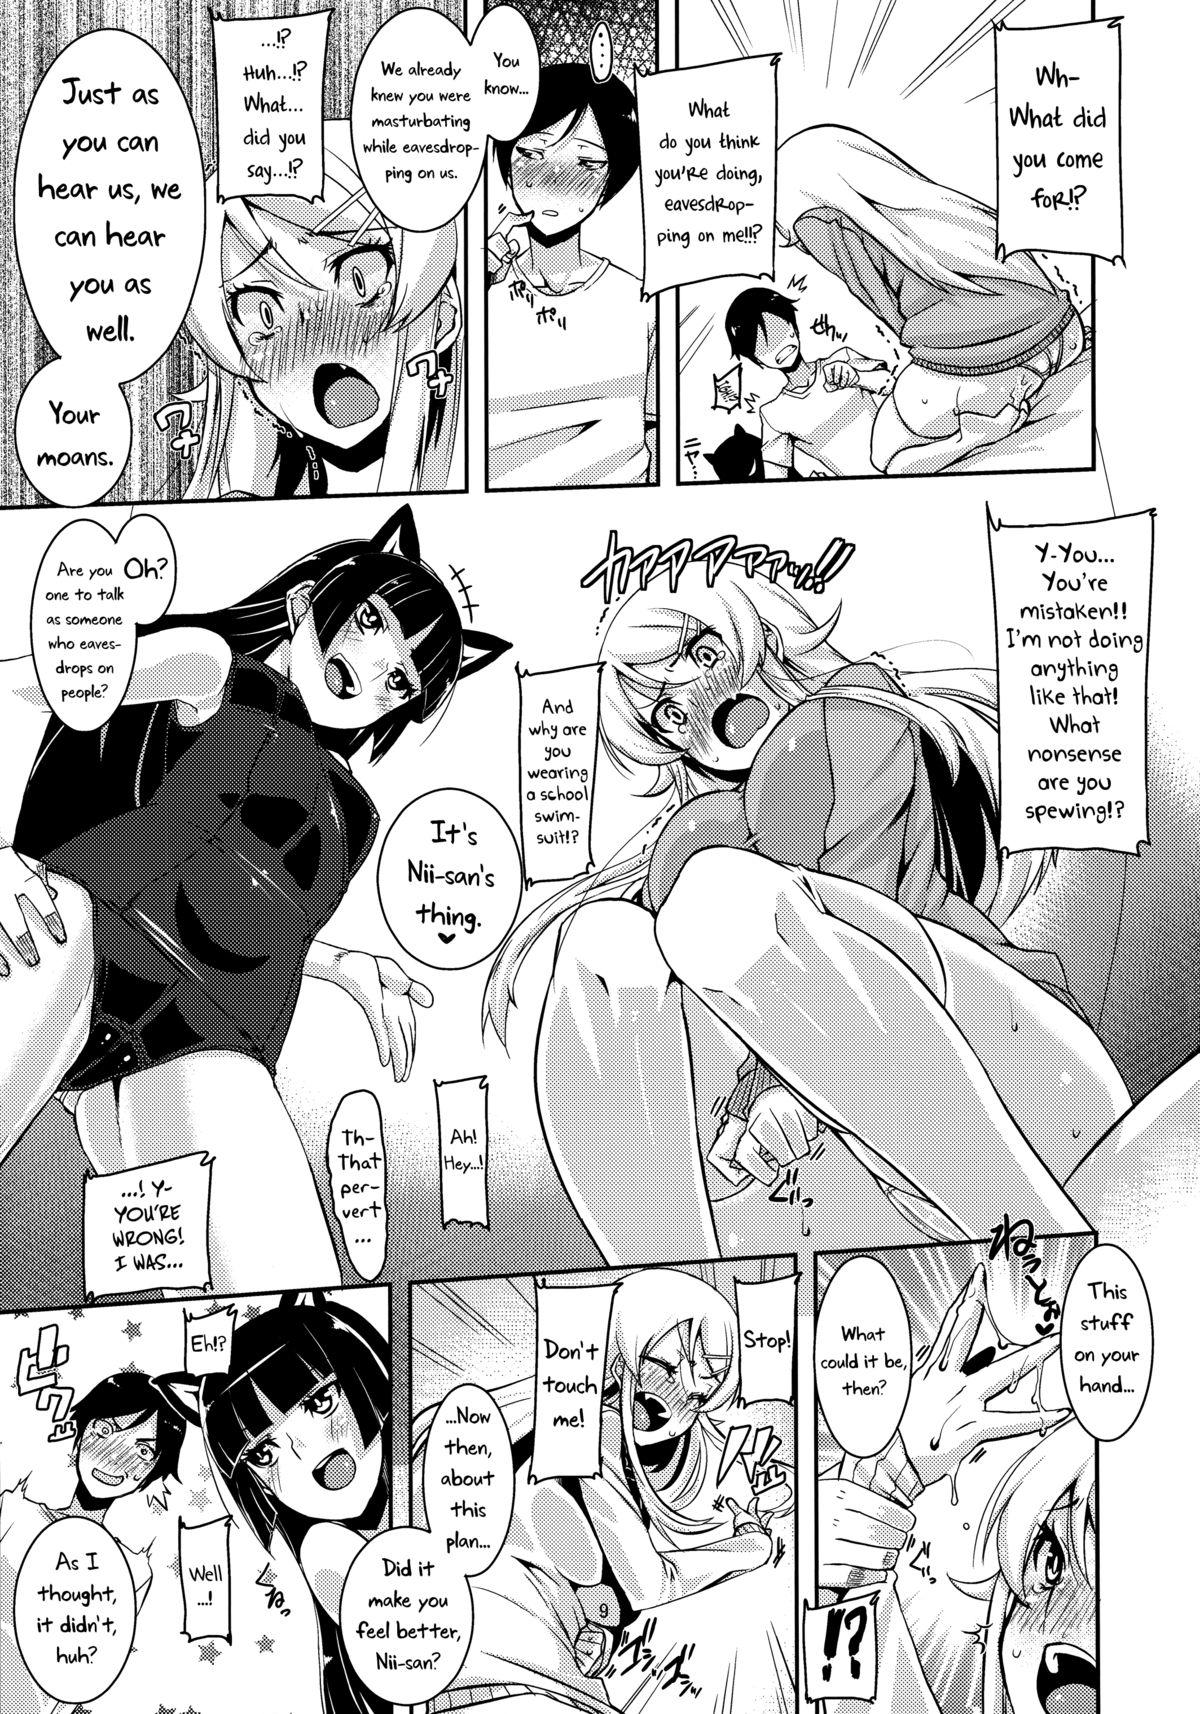 Bisexual K&R - Ore no imouto ga konna ni kawaii wake ga nai Affair - Page 10